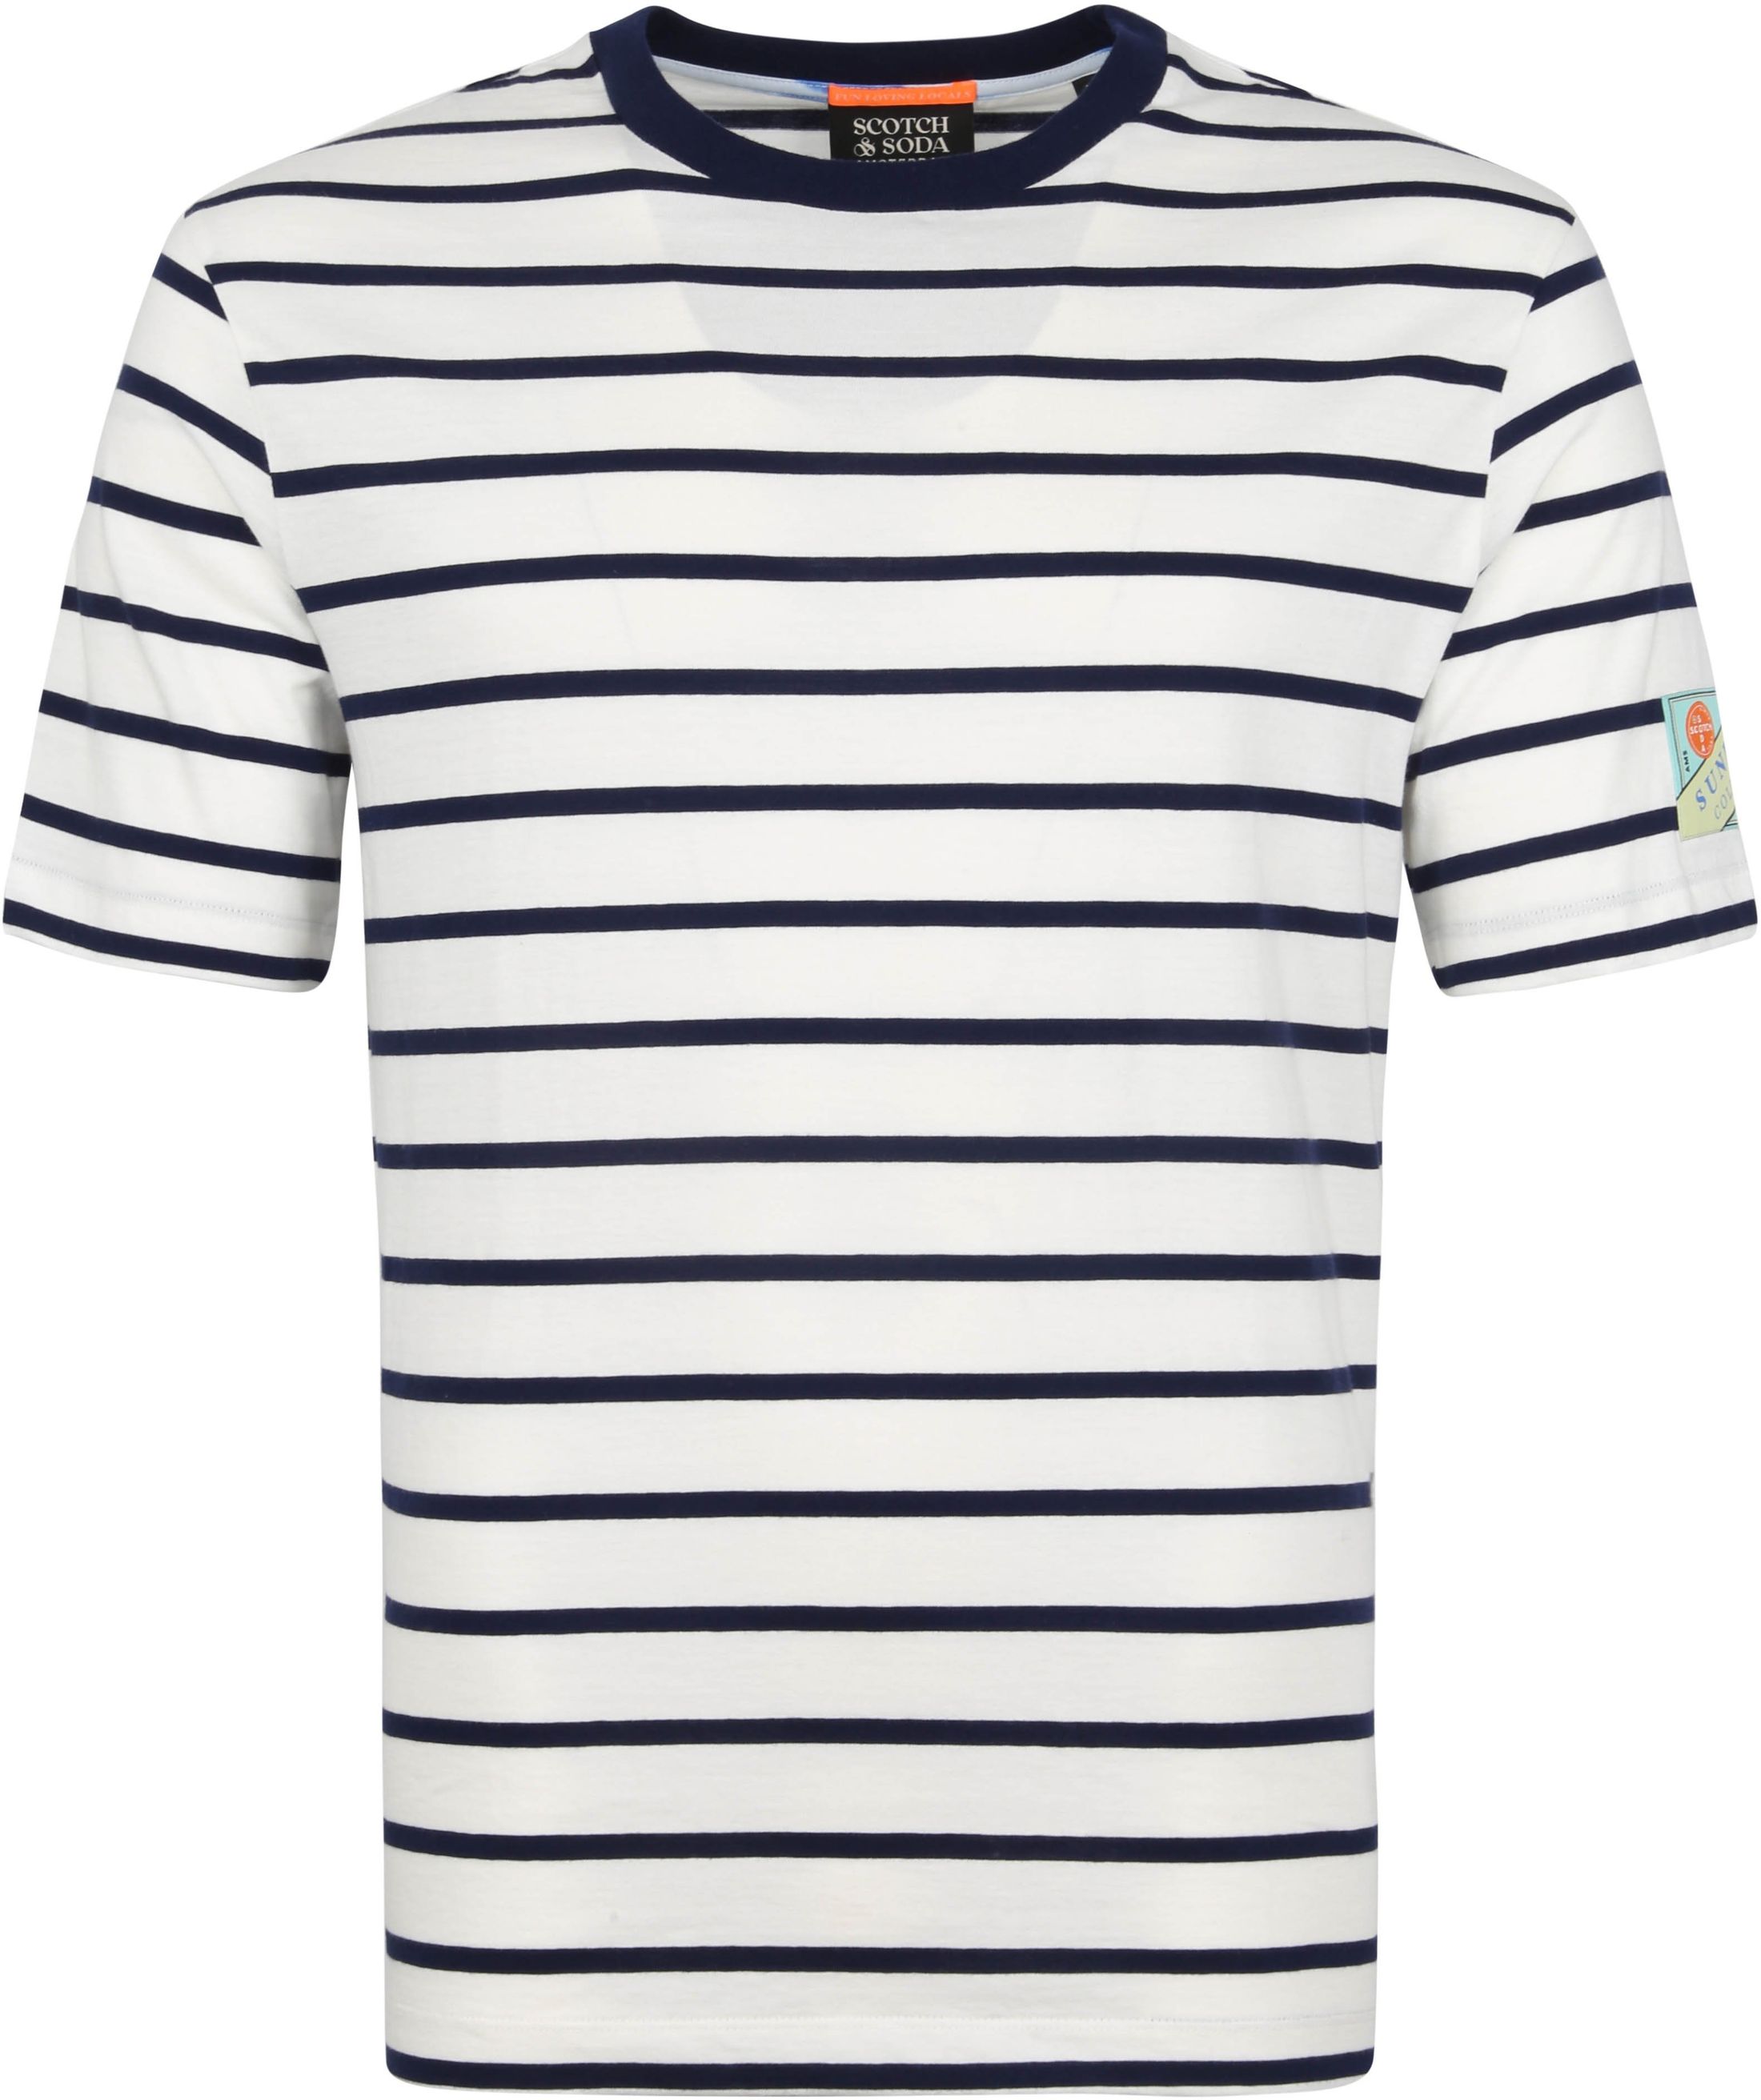 Scotch and Soda T-Shirt Stripes  Dark Blue White size XXL